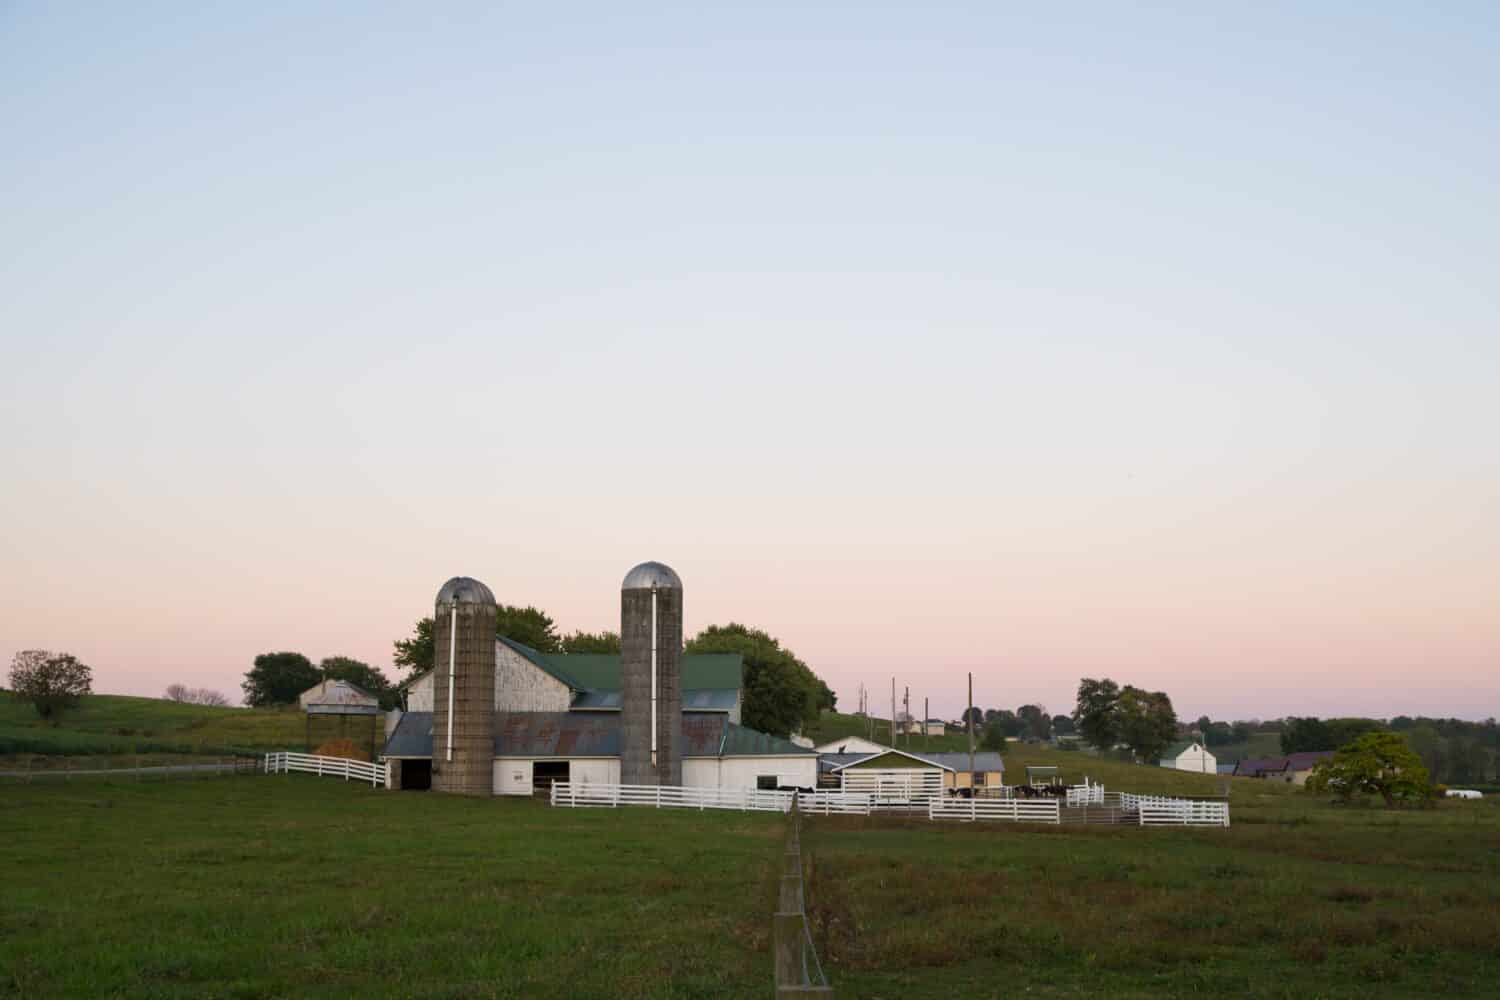 La sera cala su una scena di una fattoria rurale mentre il bestiame si nutre di fieno in una fattoria Amish vicino a Sugarcreek, Ohio.  Si possono vedere silos gemelli e un granaio di mais insieme a una staccionata bianca che racchiude il cortile.